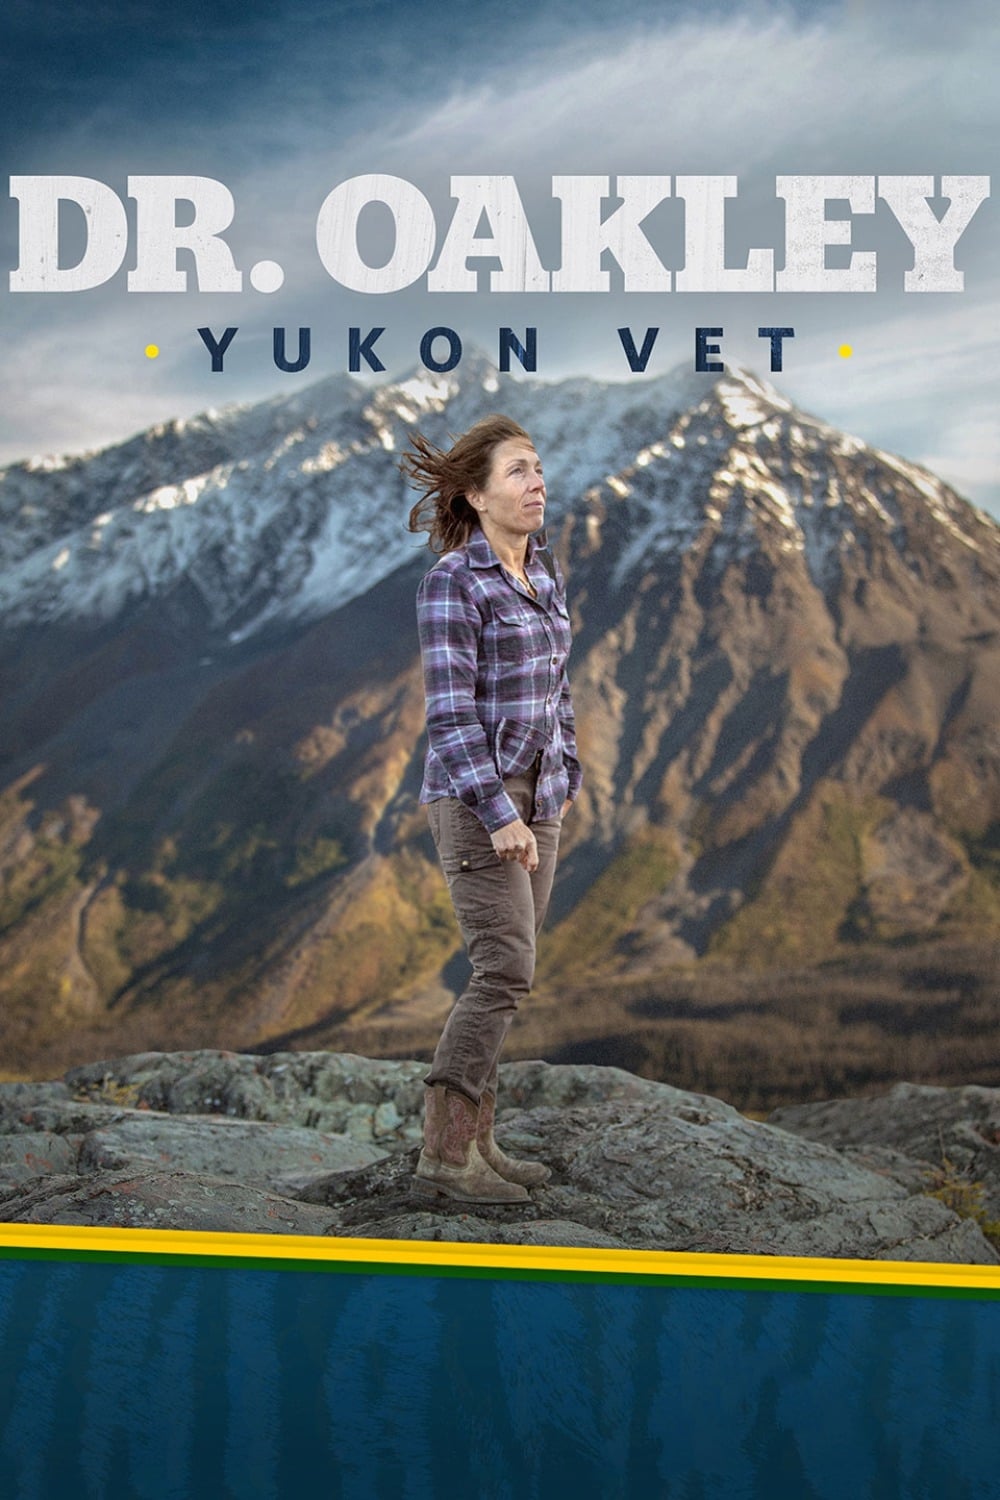 Dr. Oakley, Yukon Vet (TV Series 2014 - Now)